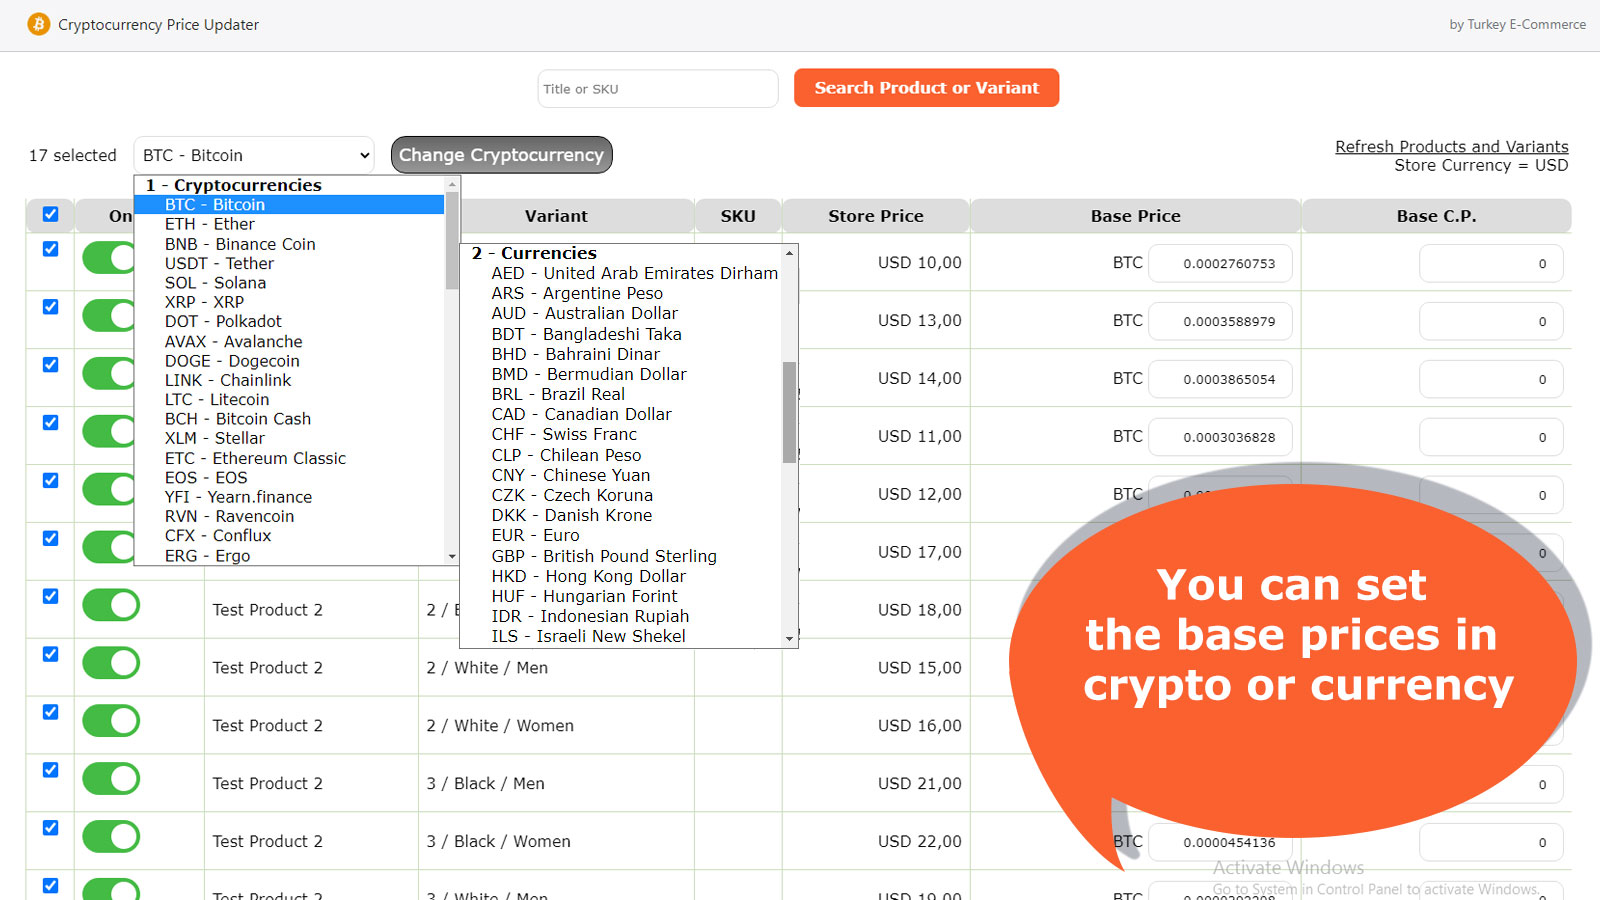 Du kan indstille basispriserne i krypto eller valuta pr. produkt